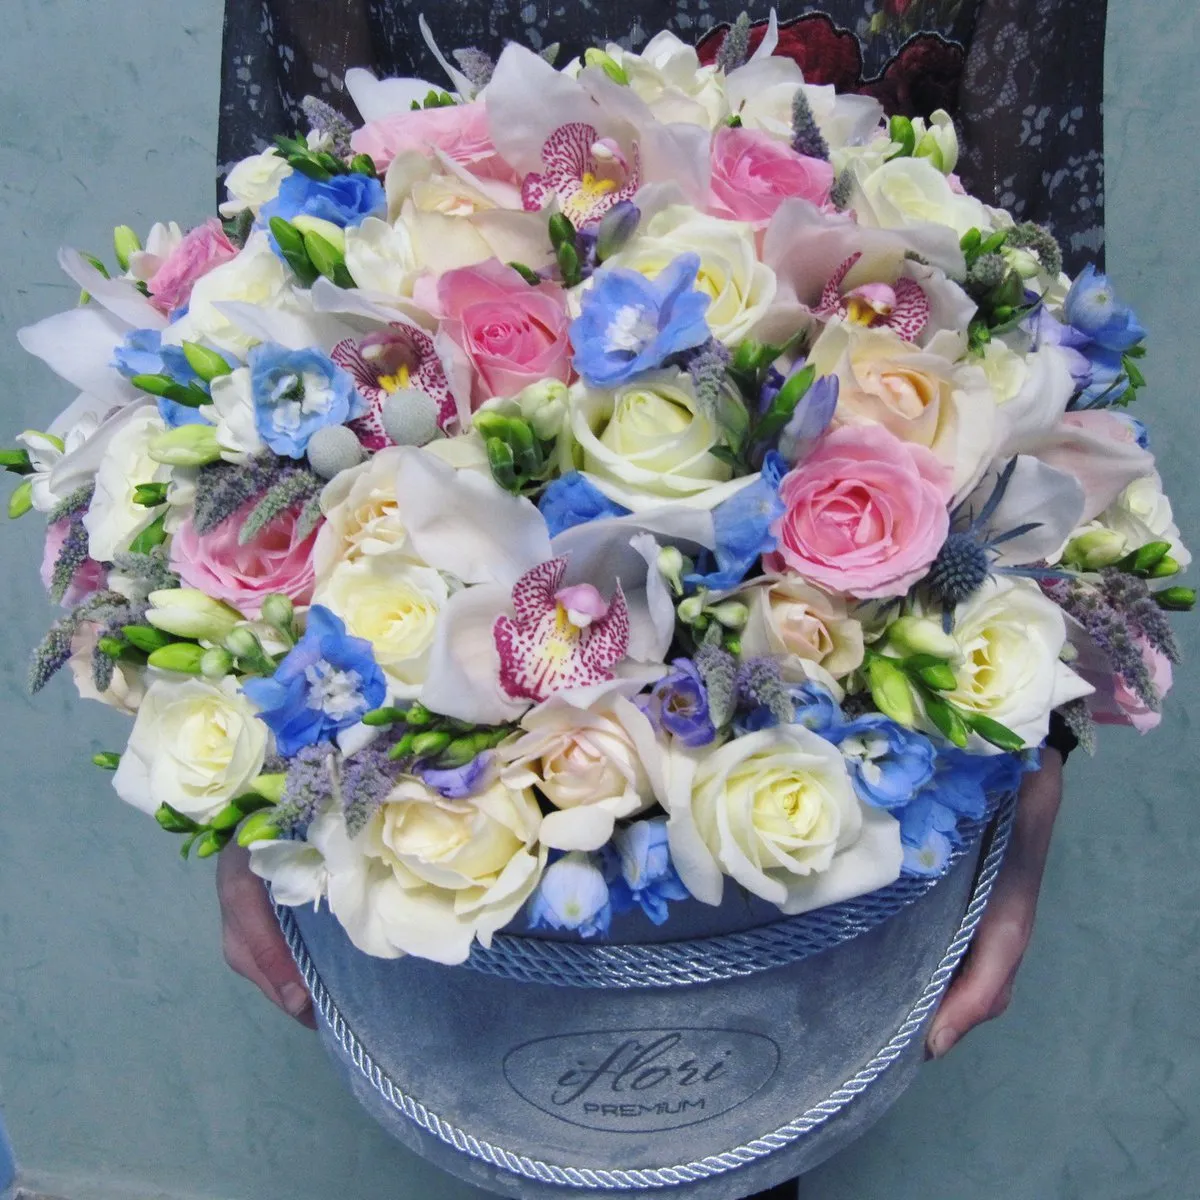 Сборный букет из роз, орхидей и эустомы - купить в Омске в цветочной  мастерской Лаванда